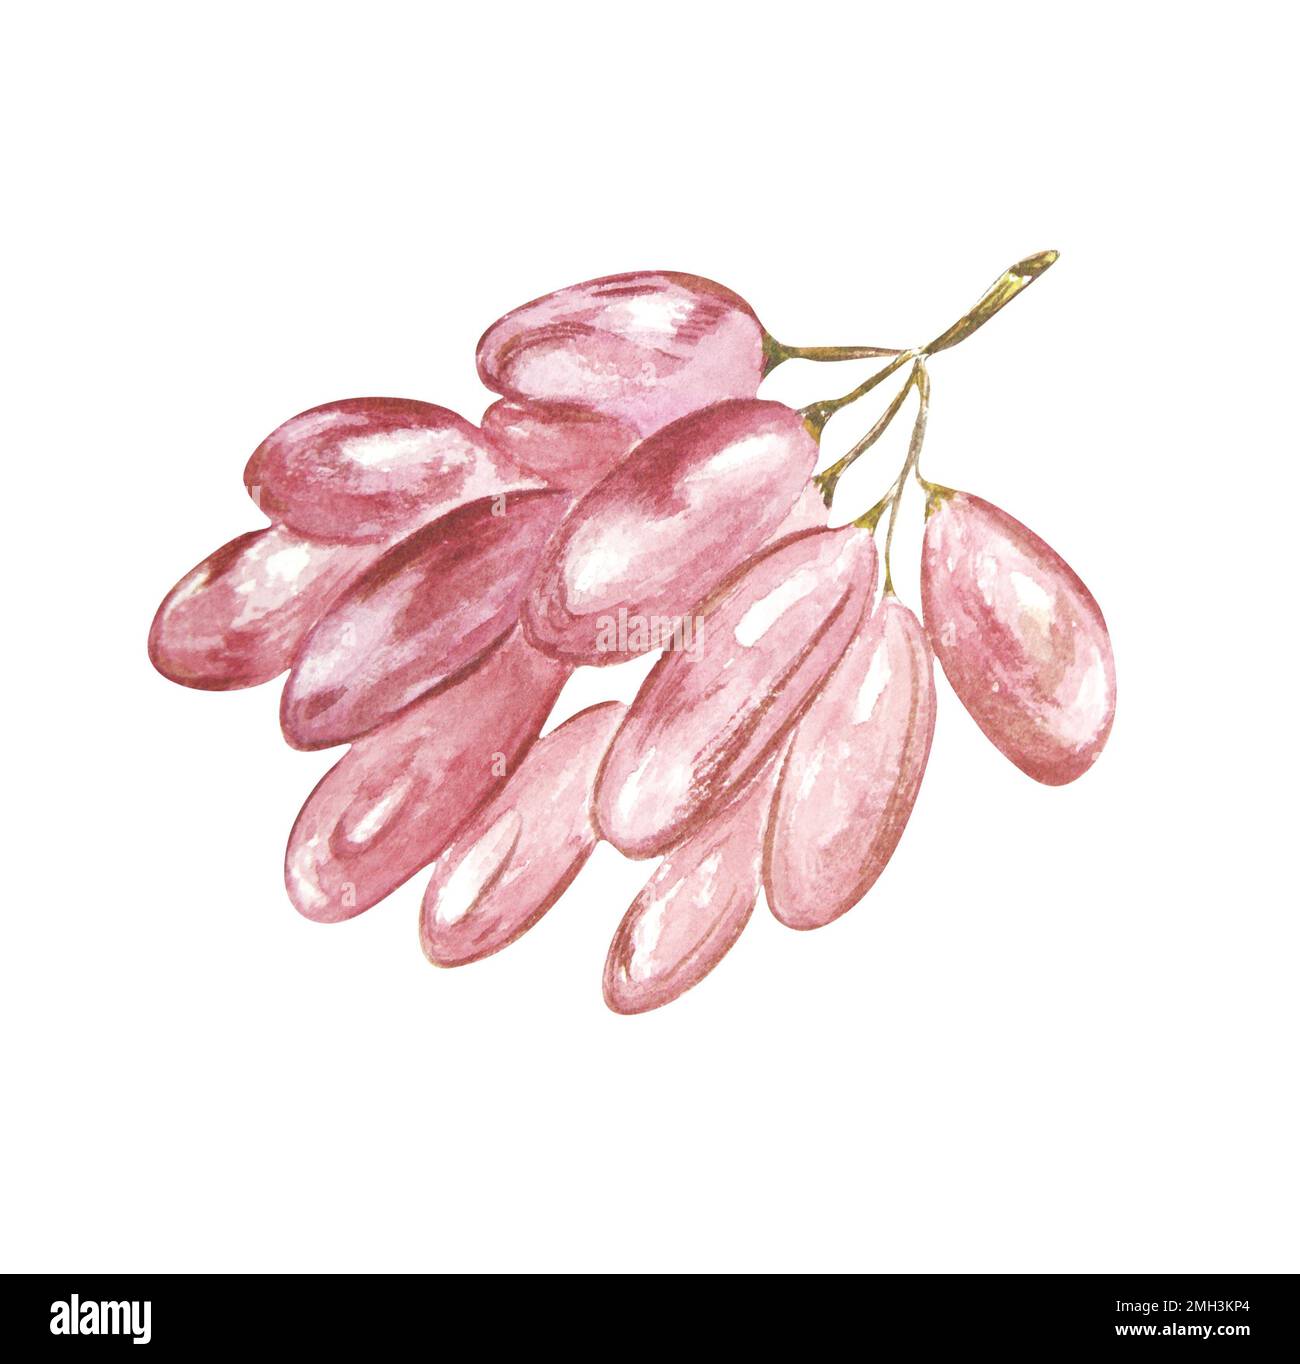 Bouquet d'aquarelles de raisins sur fond blanc. La trame peut être utilisée comme élément pour les projets, les marchandises, les cartes postales et les marques commerciales Banque D'Images